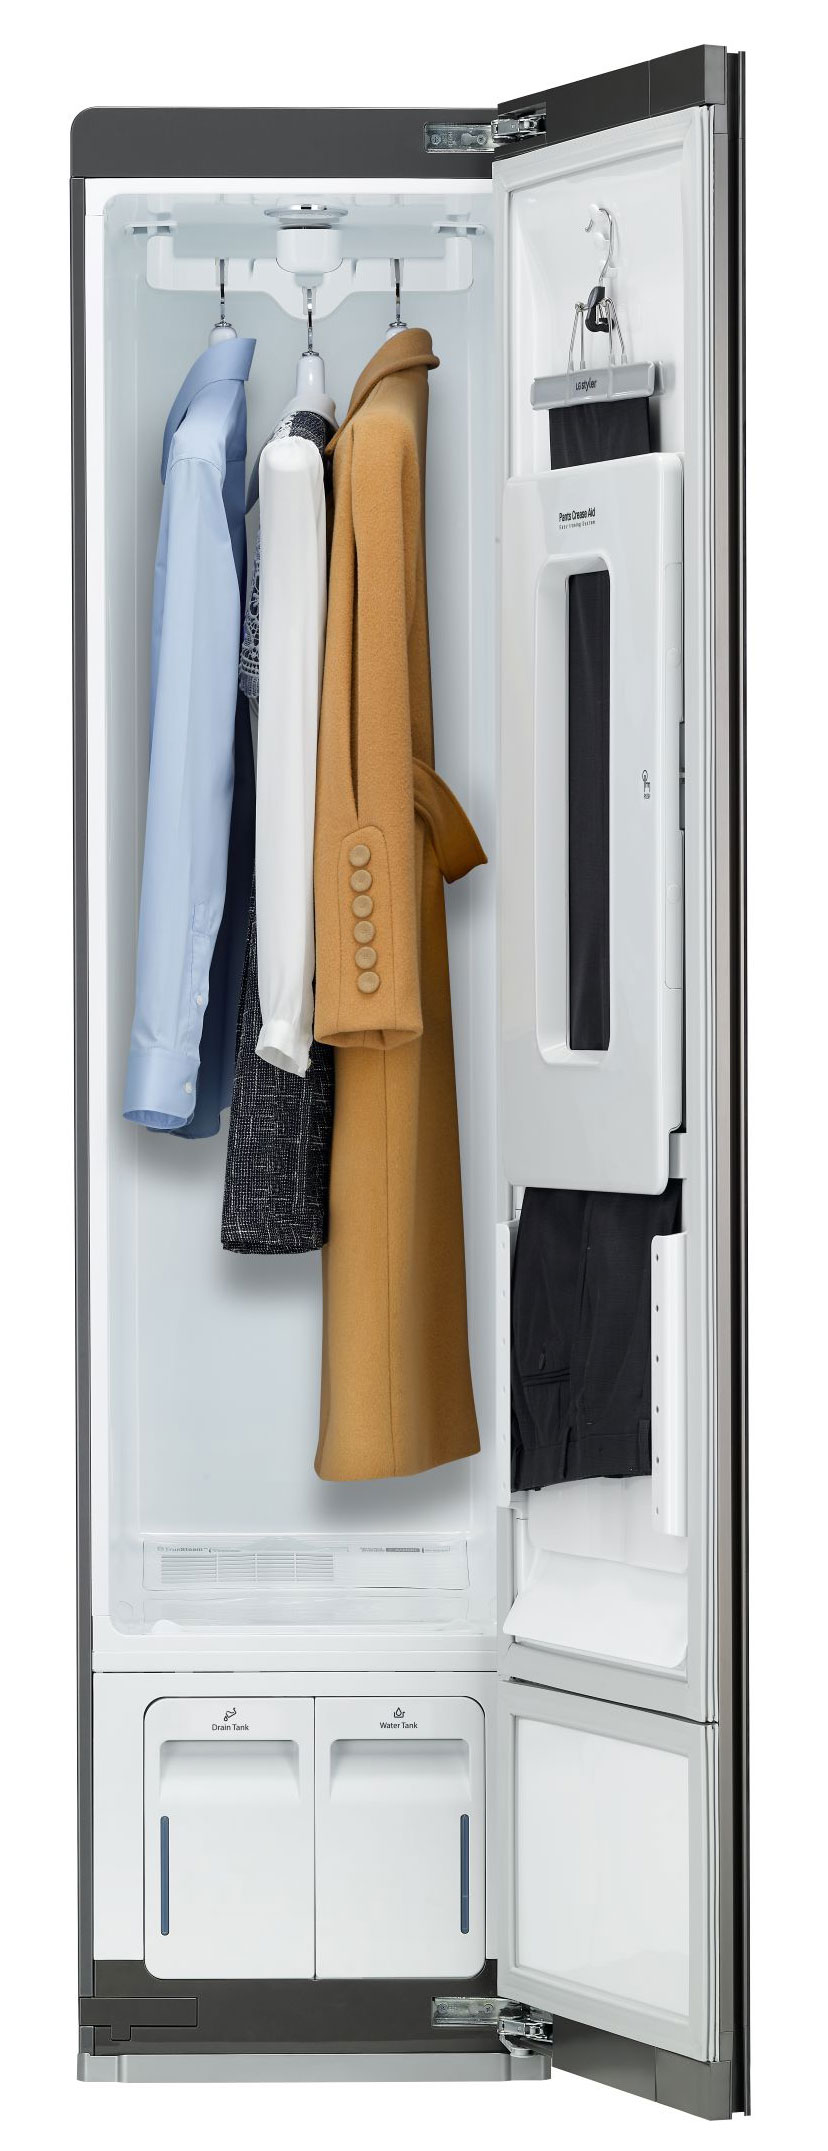 паровой шкаф для ухода за одеждой lg s3mfc styler